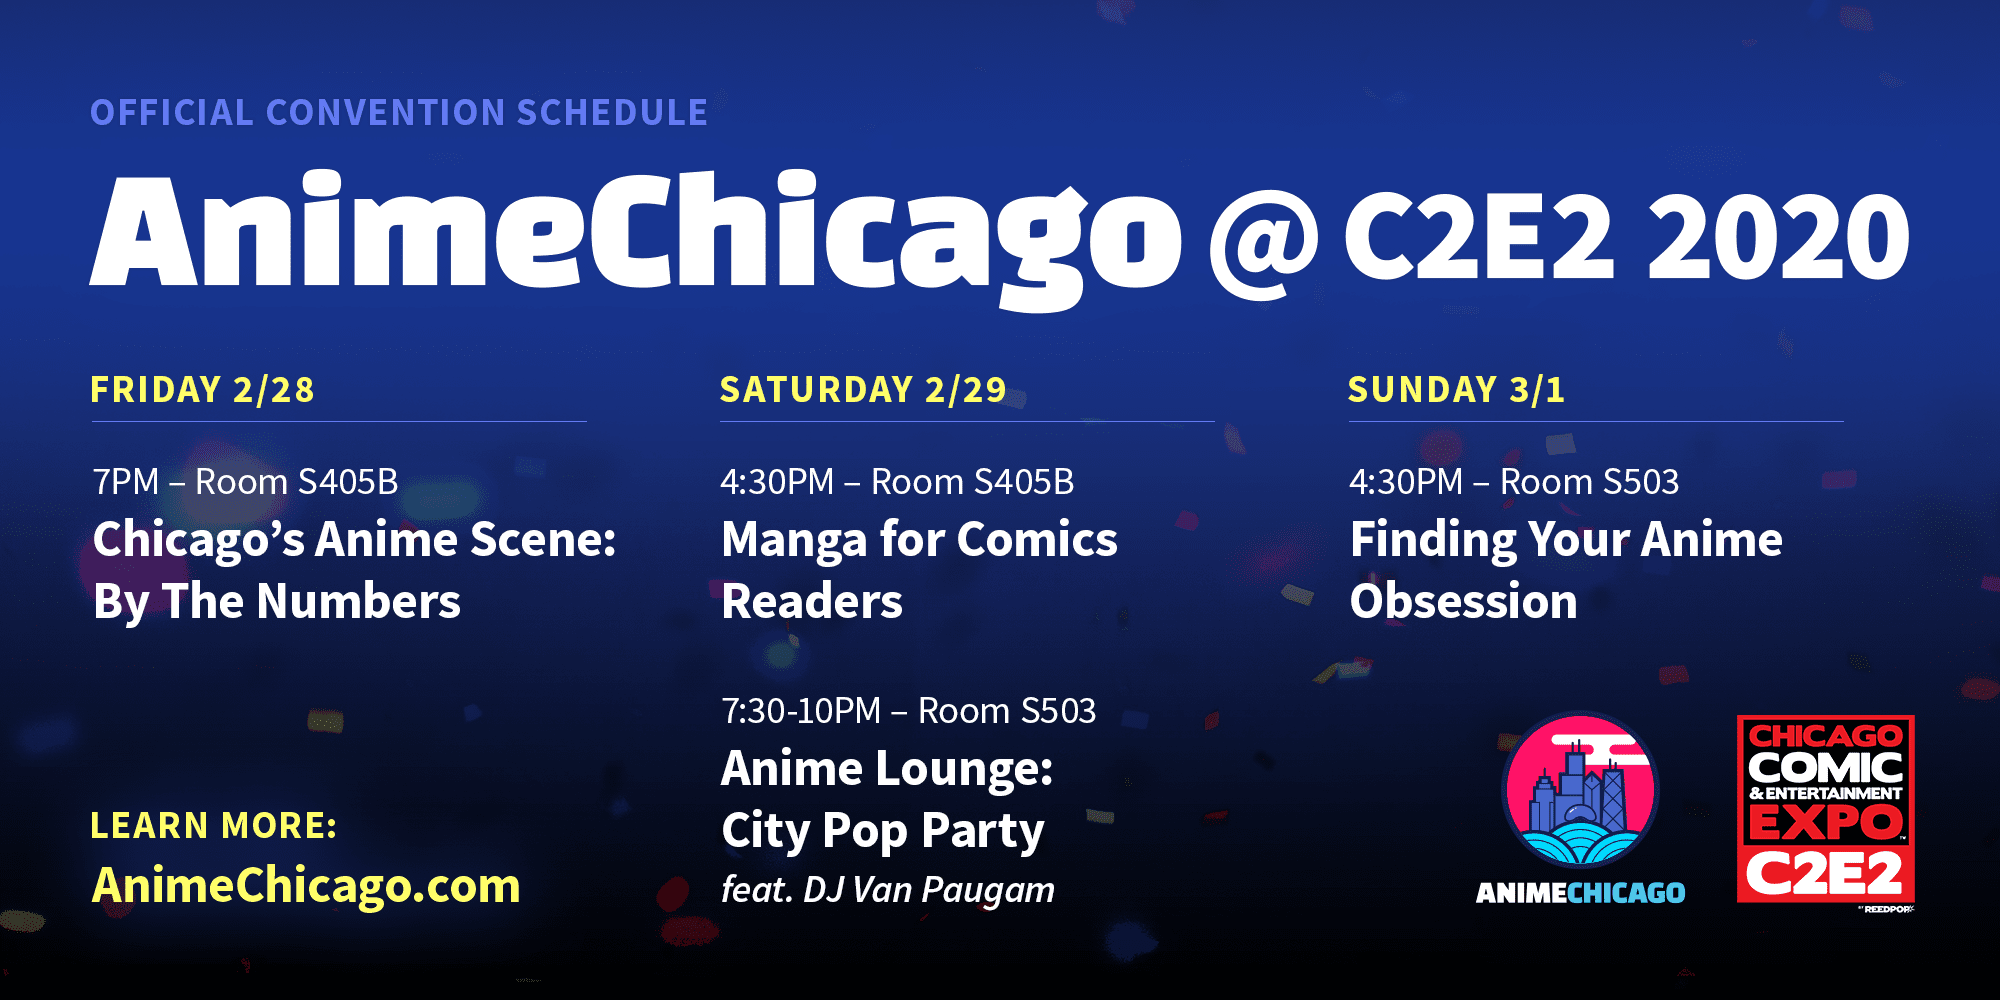 AnimeChicago at C2E2 2020!